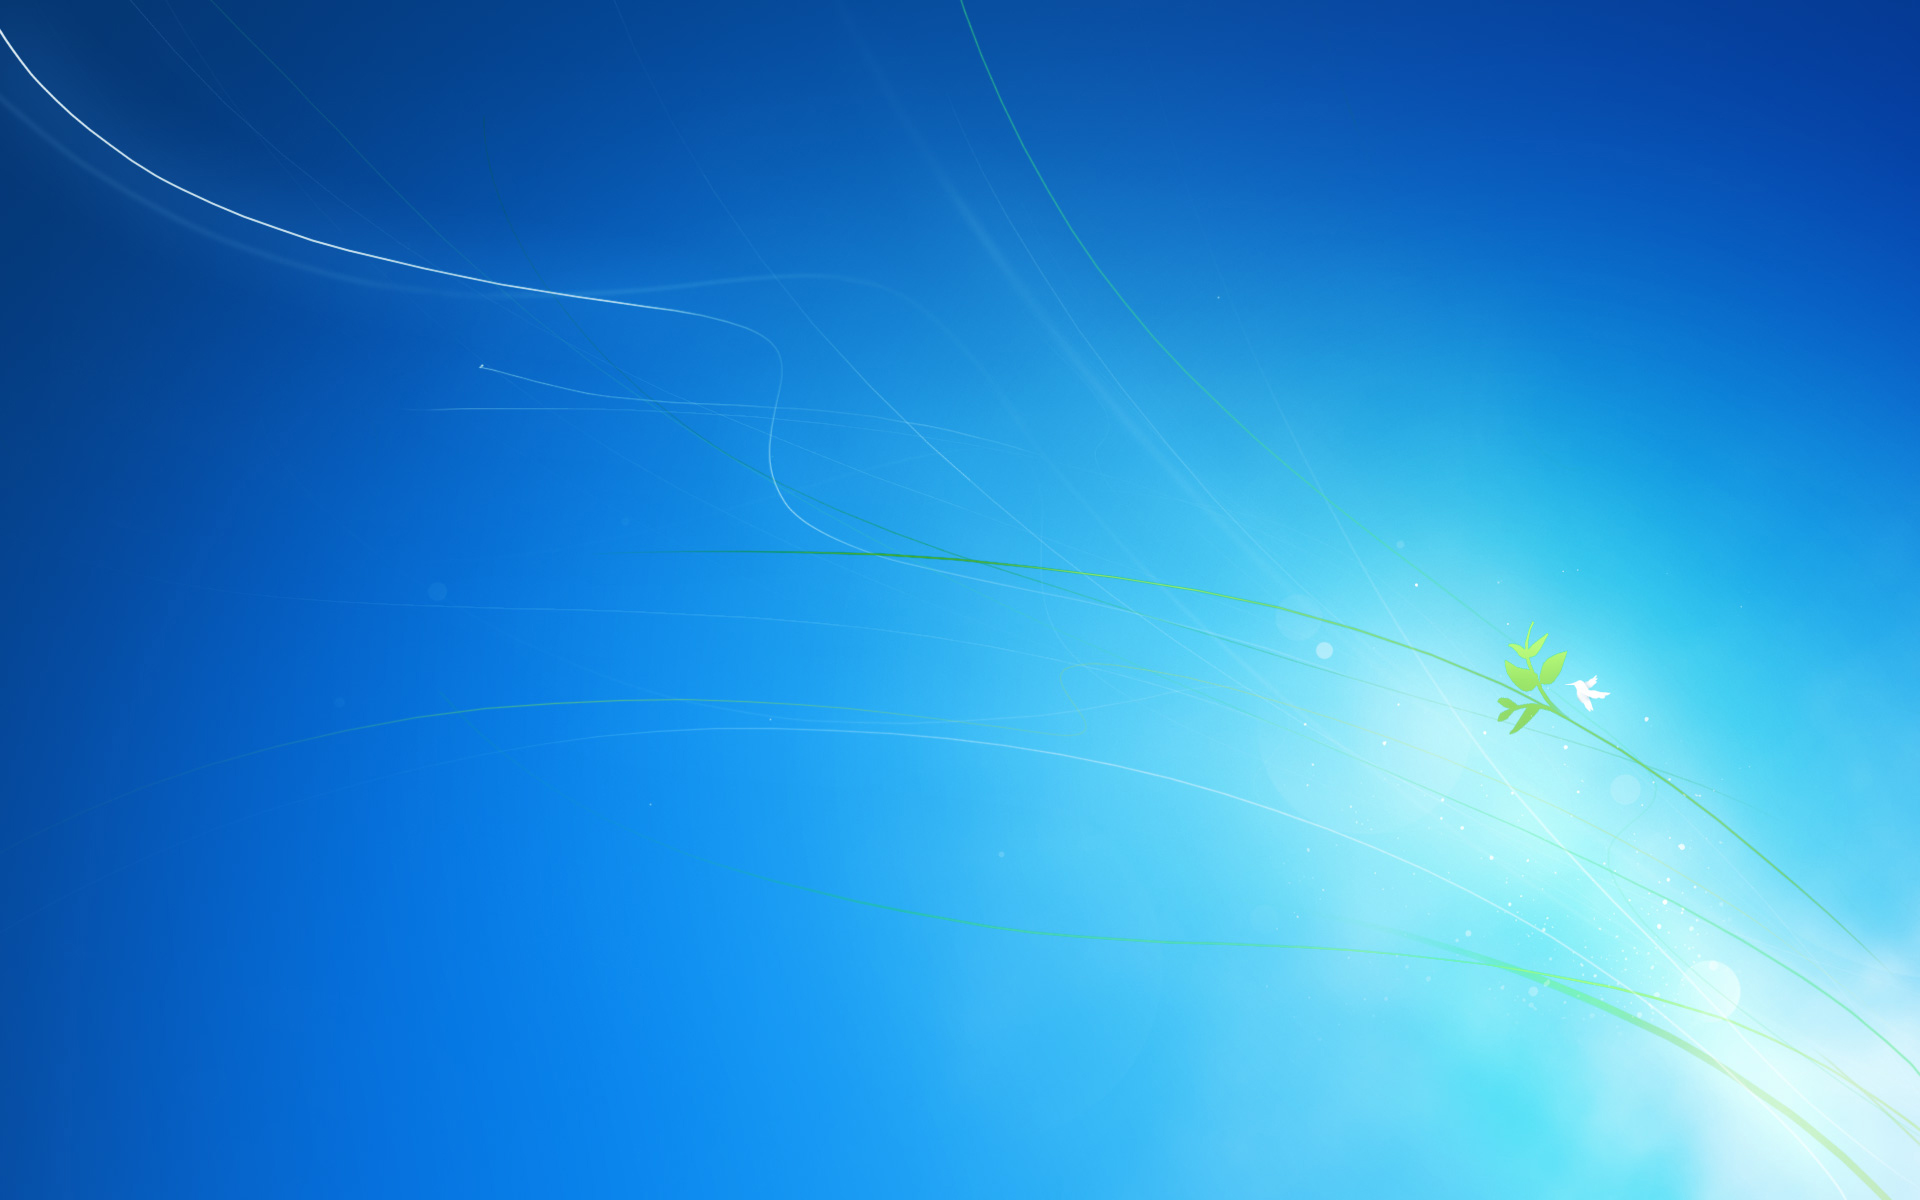 Windows 7 Original - Wallpaper, High Definition, High Quality, Widescreen